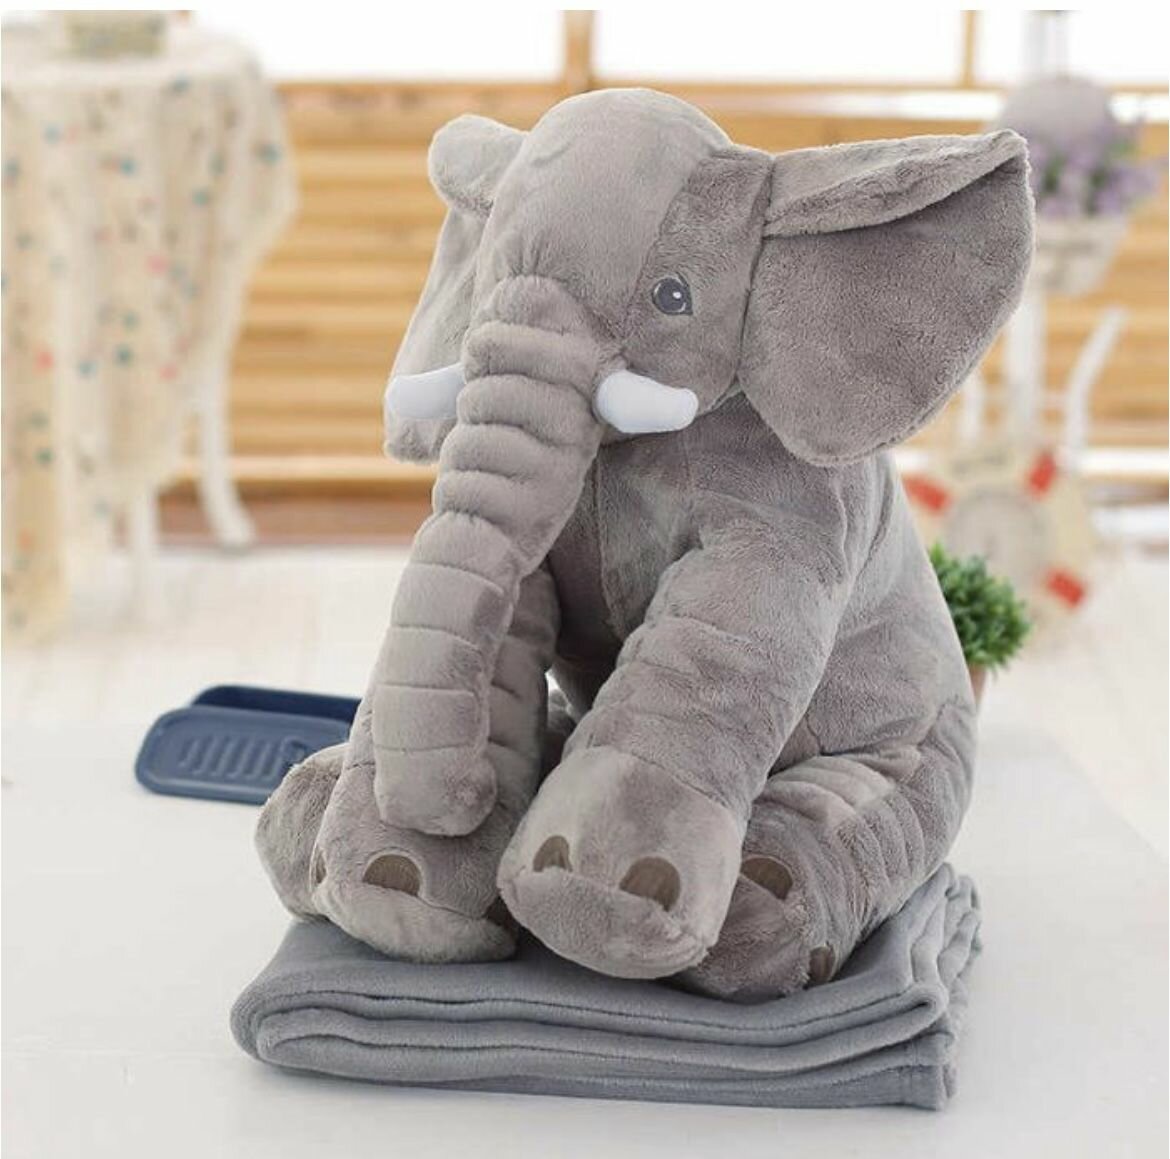 Мягкая игрушка - подушка Слон с пледом внутри, 60 см